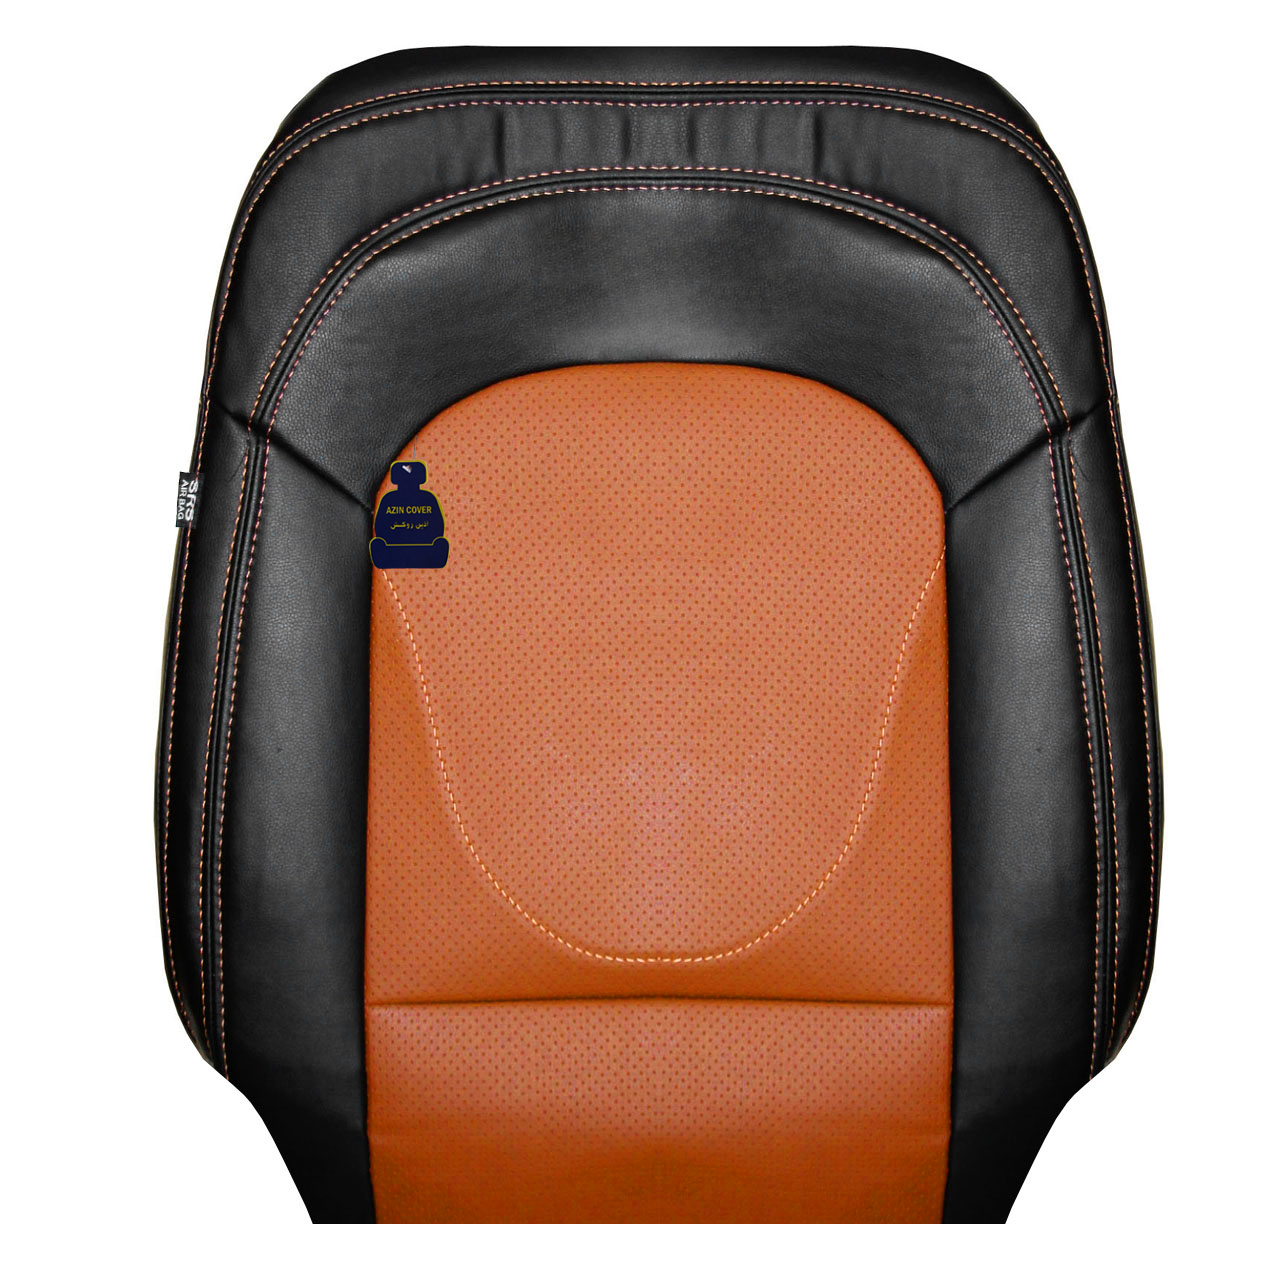 روکش صندلی خودرو آذین روکش مدل AZ00 مناسب برای هایما S7